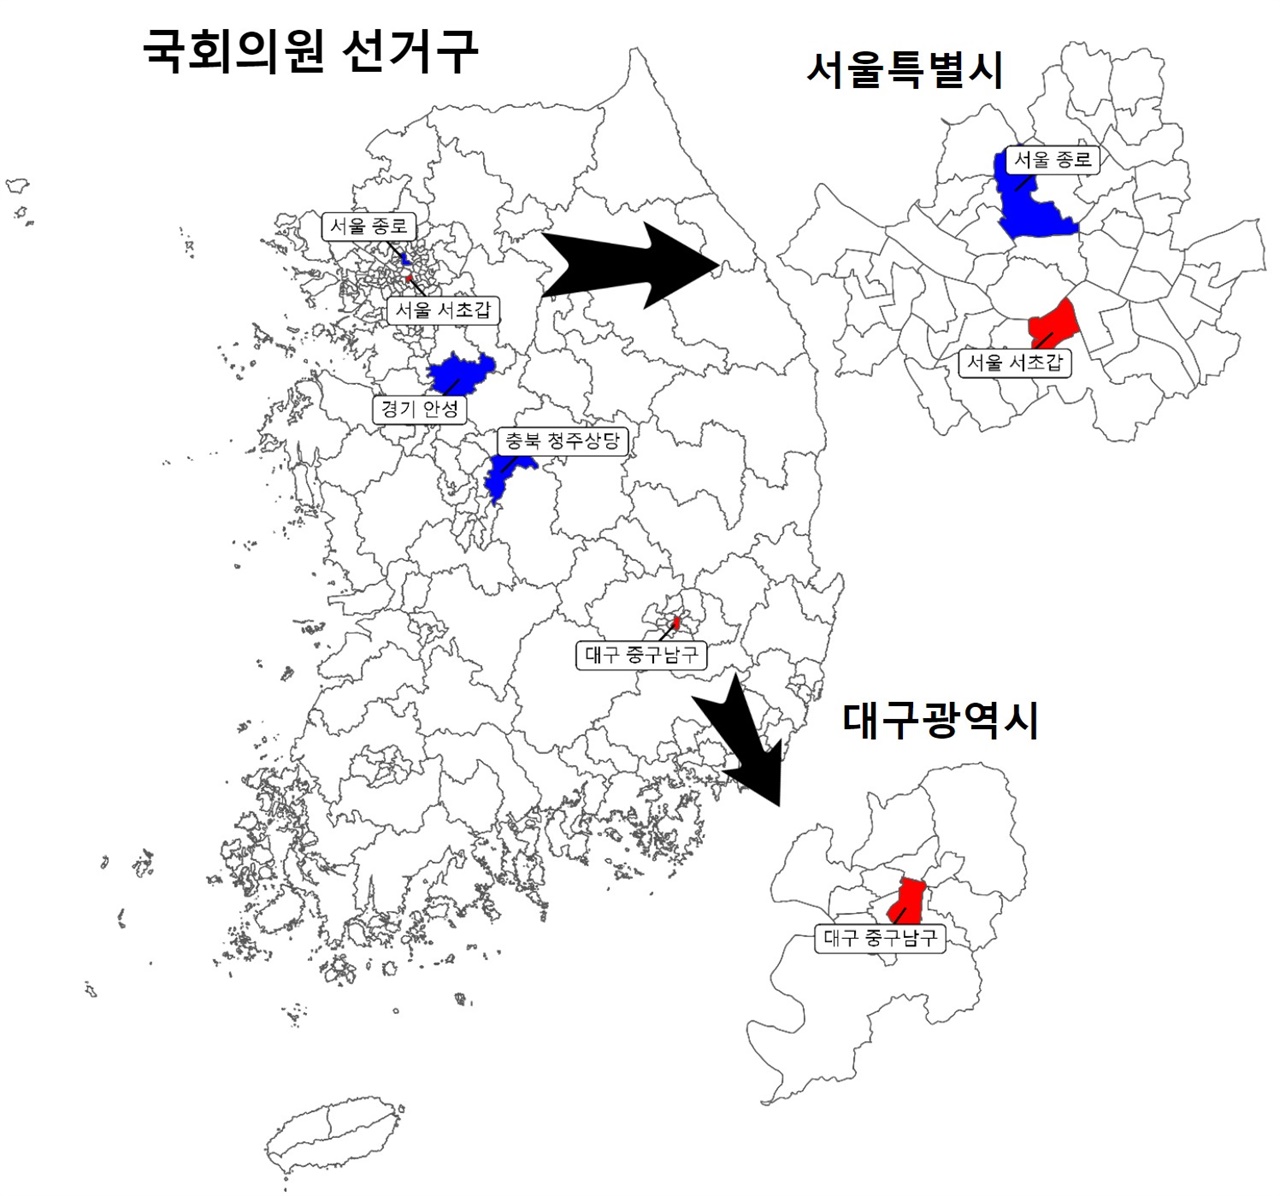 3월9일 국회의원 재보궐선거 지도 제20대 대통령선거가 치뤄지는 3월 9일 재보궐선거 국회의원 선거구.